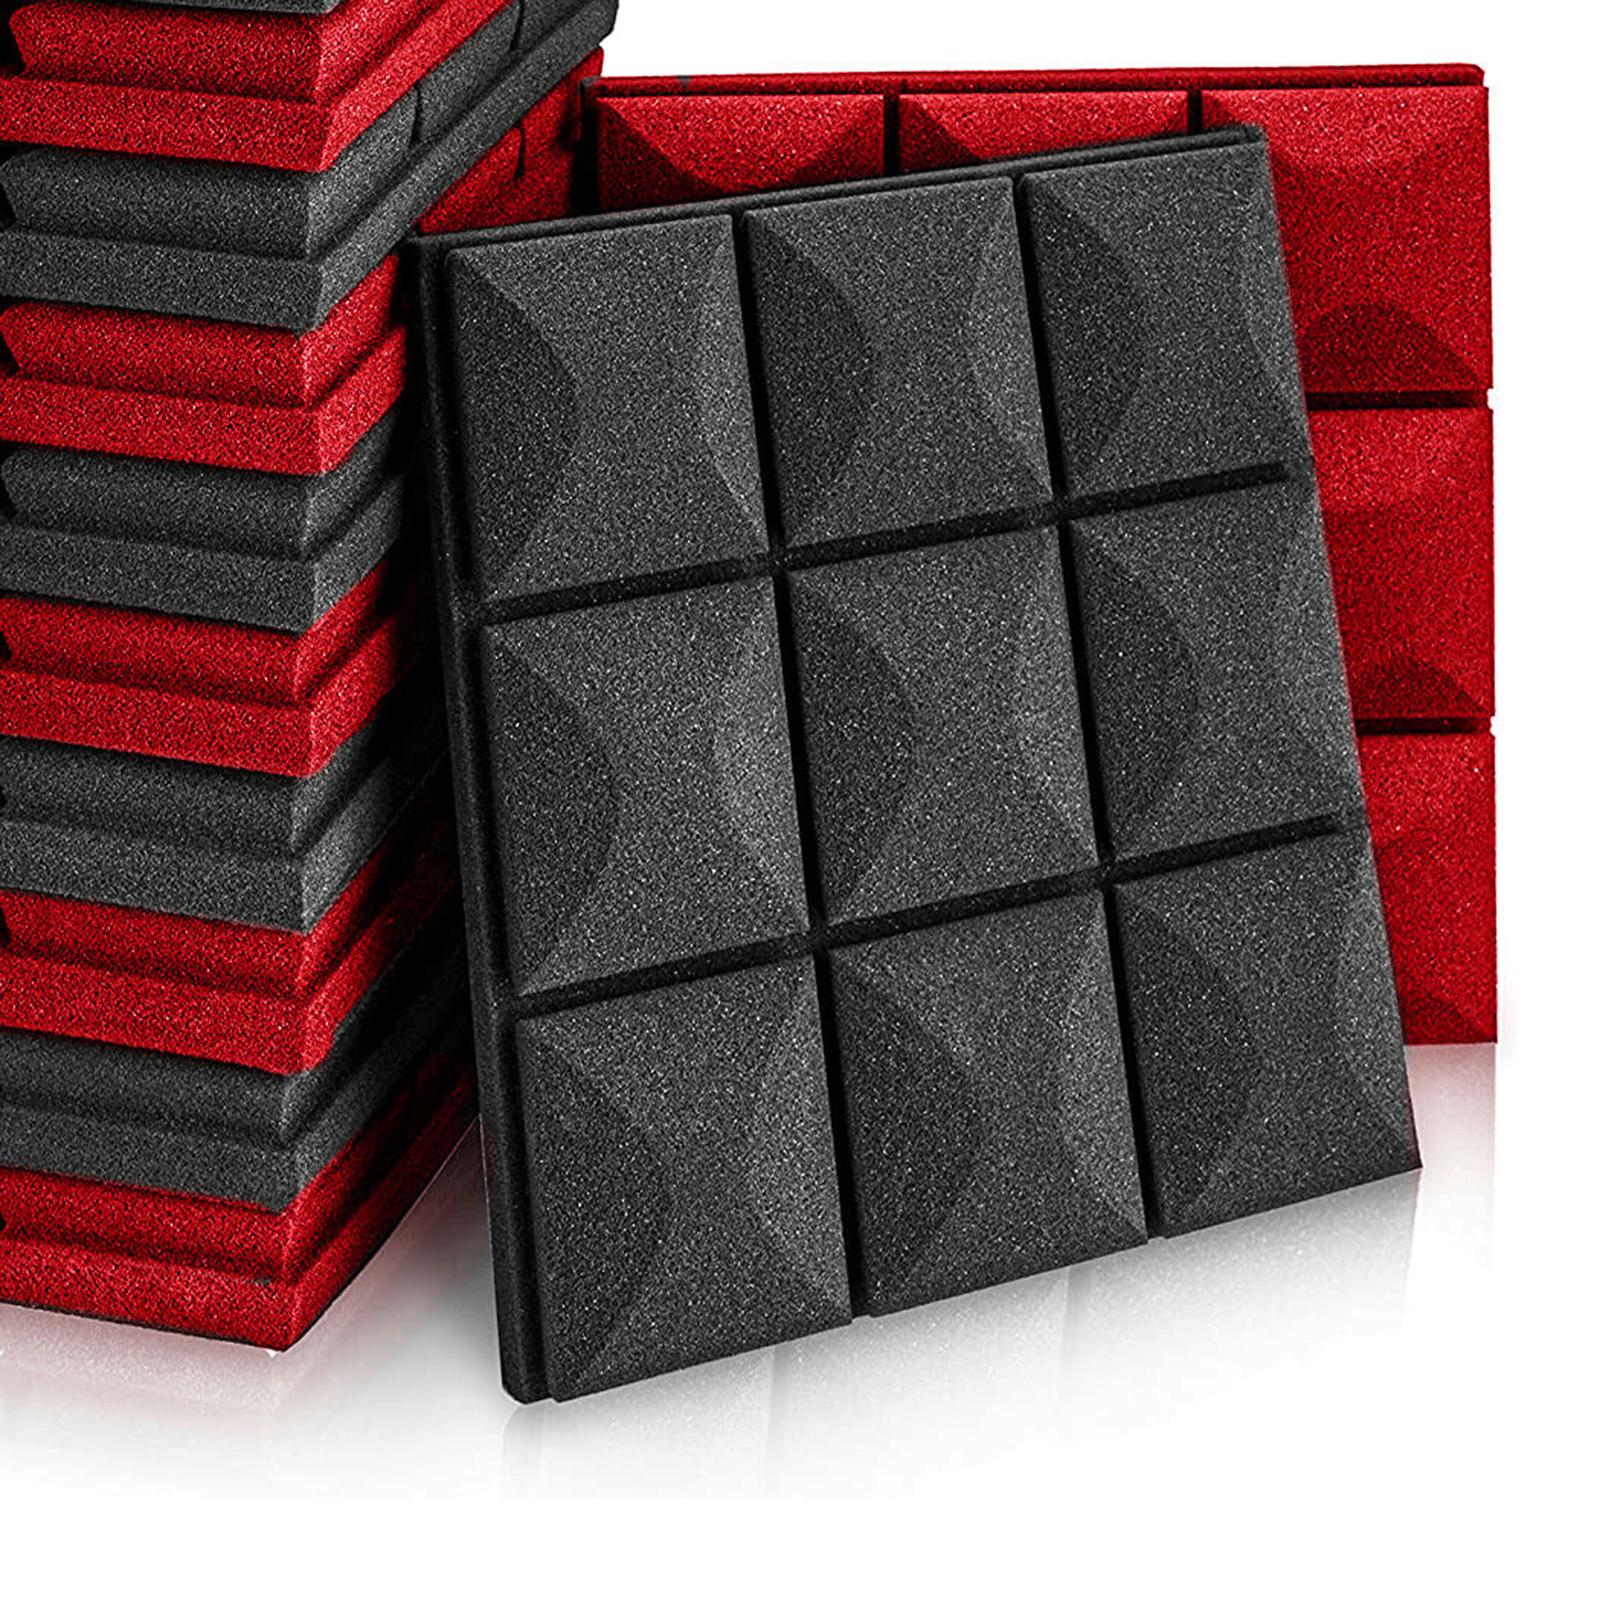 12x 30x30cm Acoustic Soundproofing Foam Panels Pads Black & Red Foam Tiles